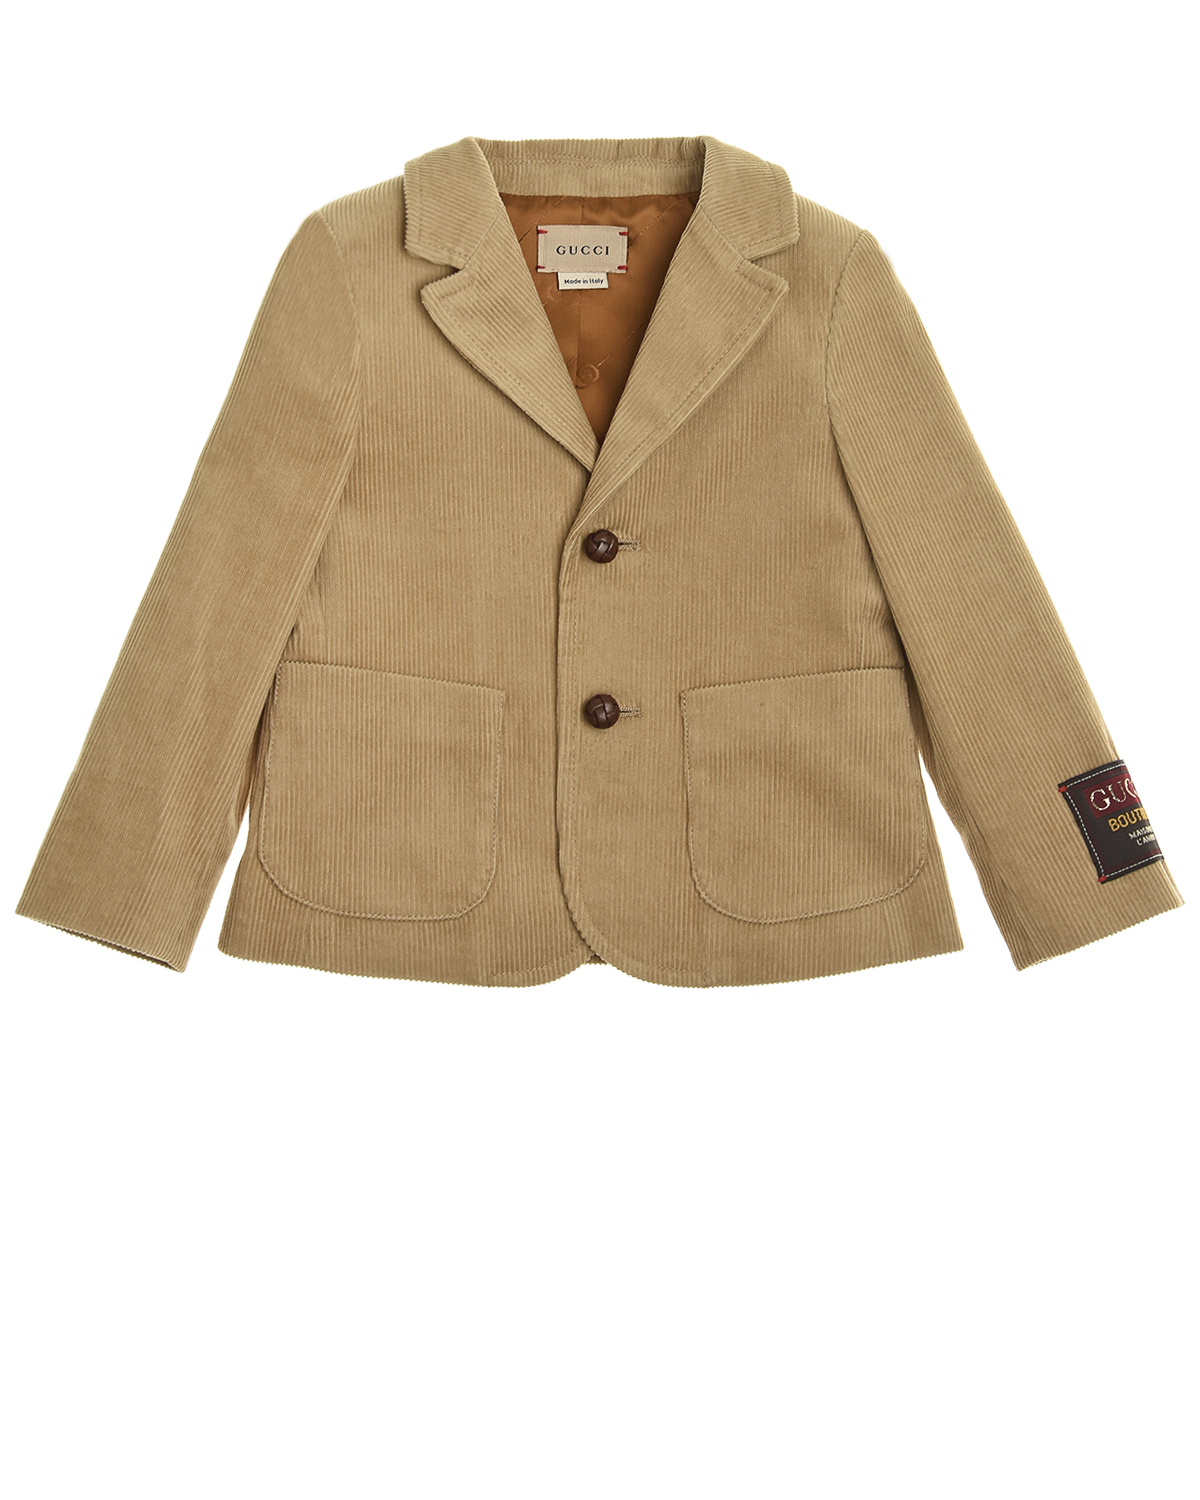 Однобортный пиджак из вельвета GUCCI детский, размер 98, цвет песочный